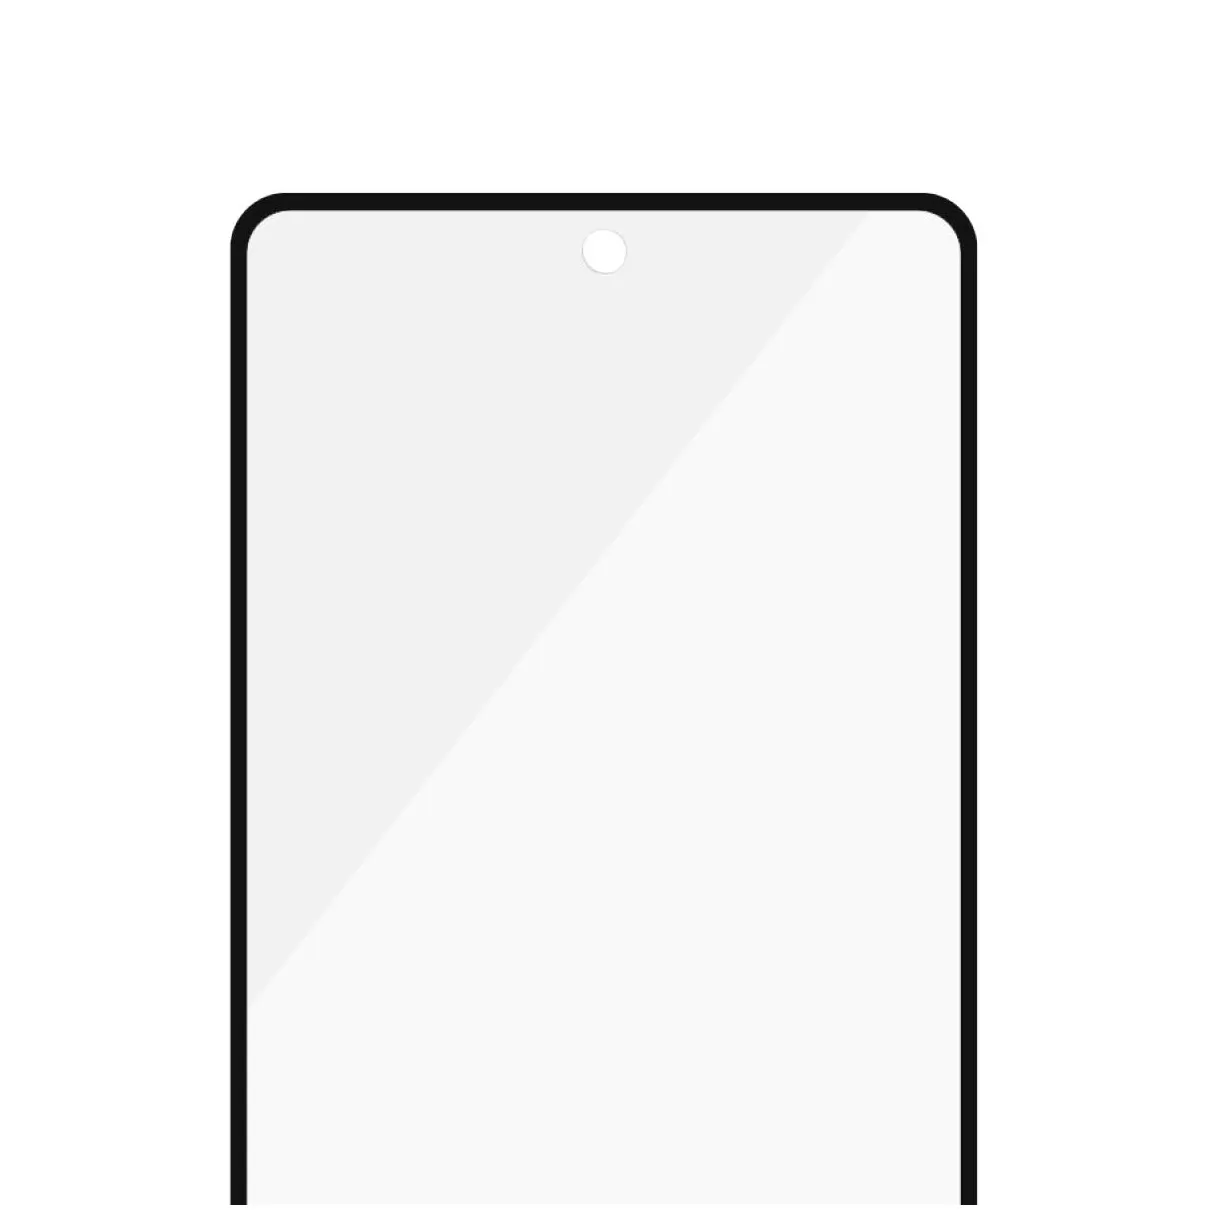 PanzerGlass Samsung Galaxy A52/A52 5G Case Friendly Zwart